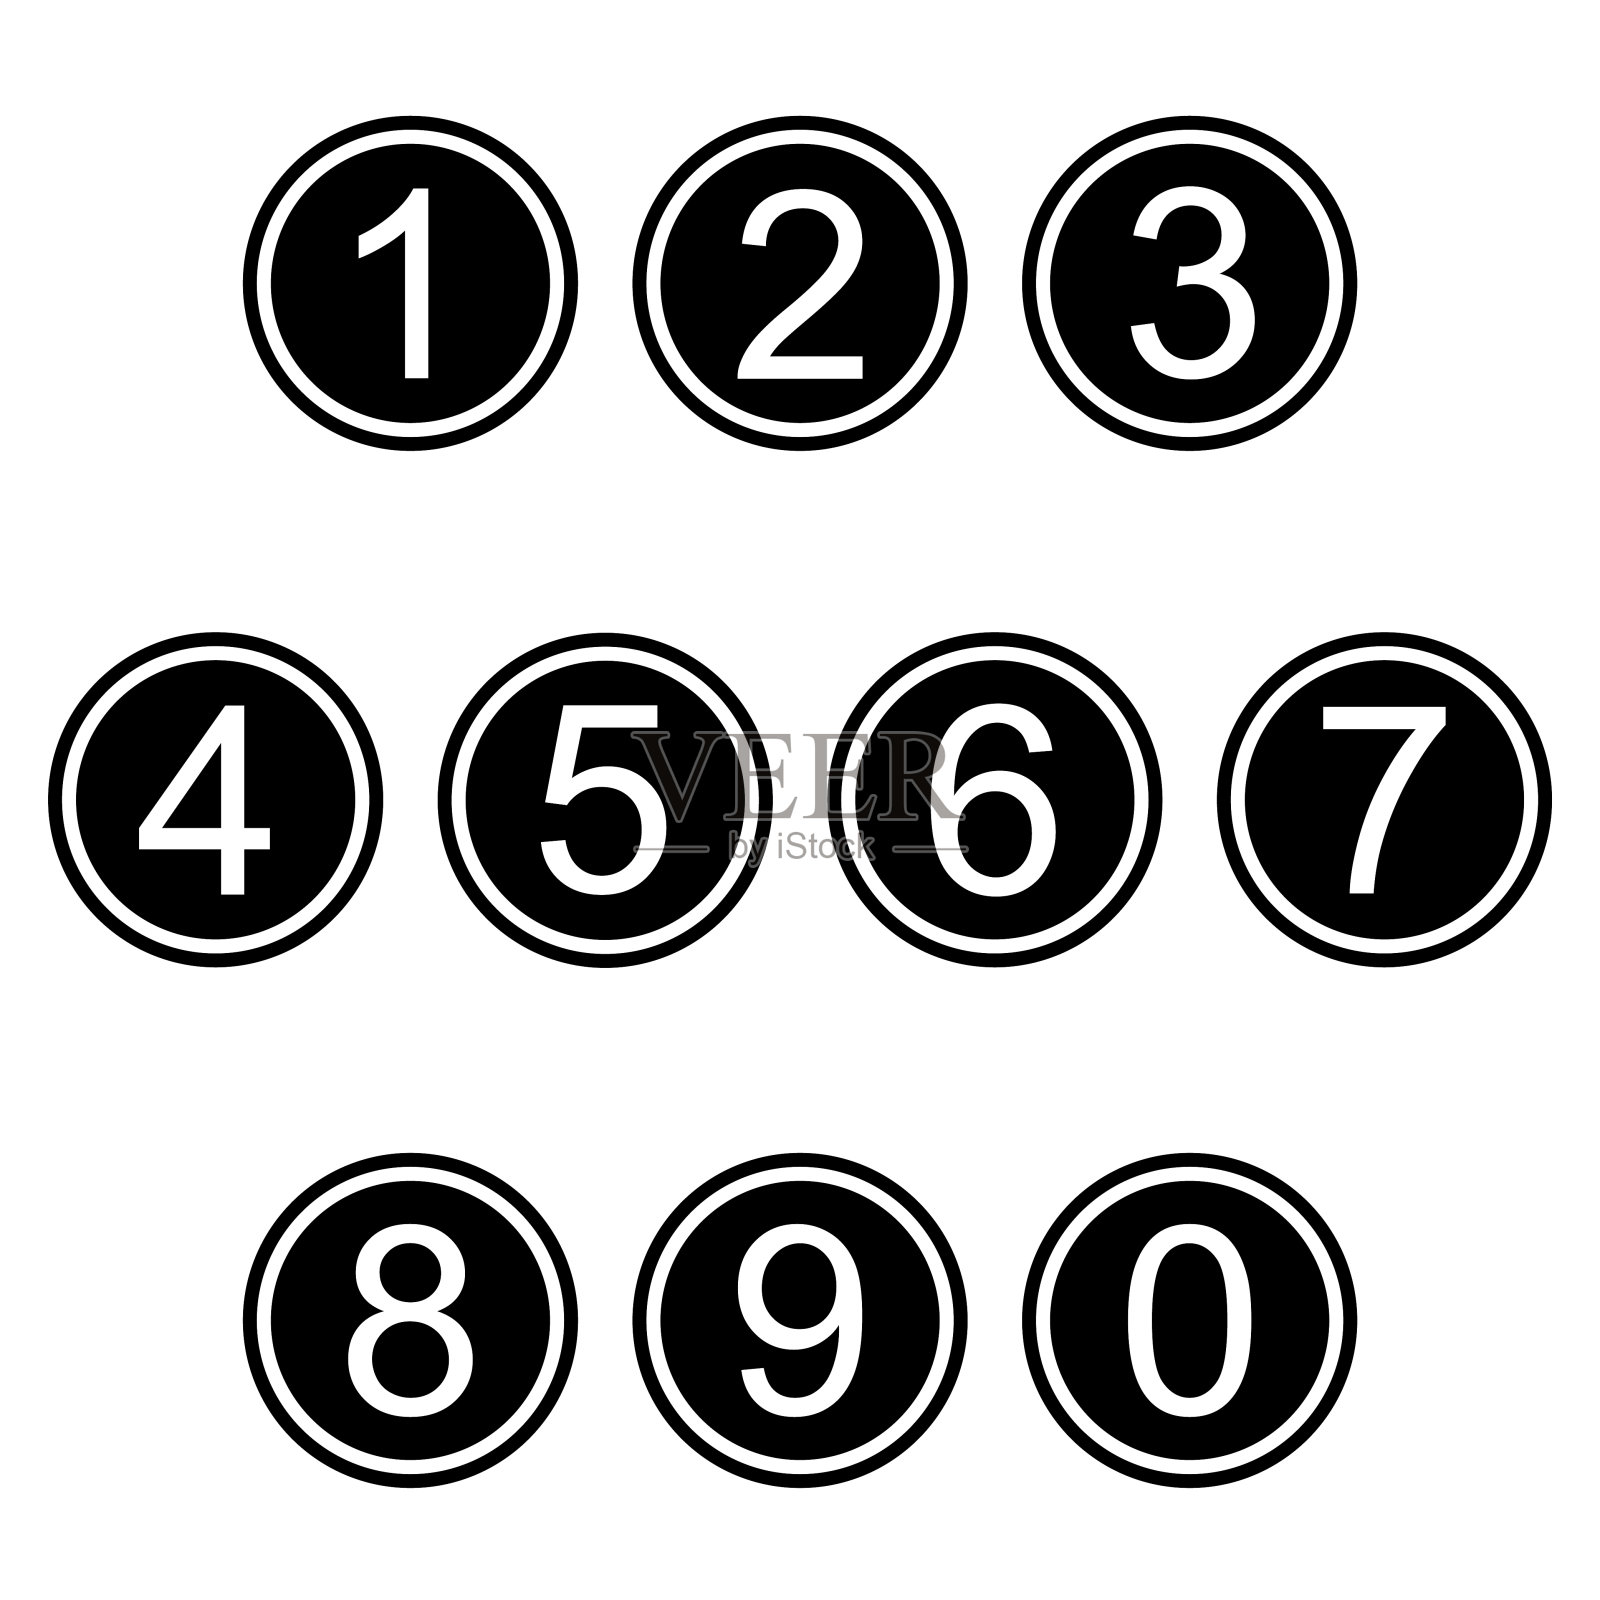 数字符号、图标符号、简单的黑白彩色集合图标素材